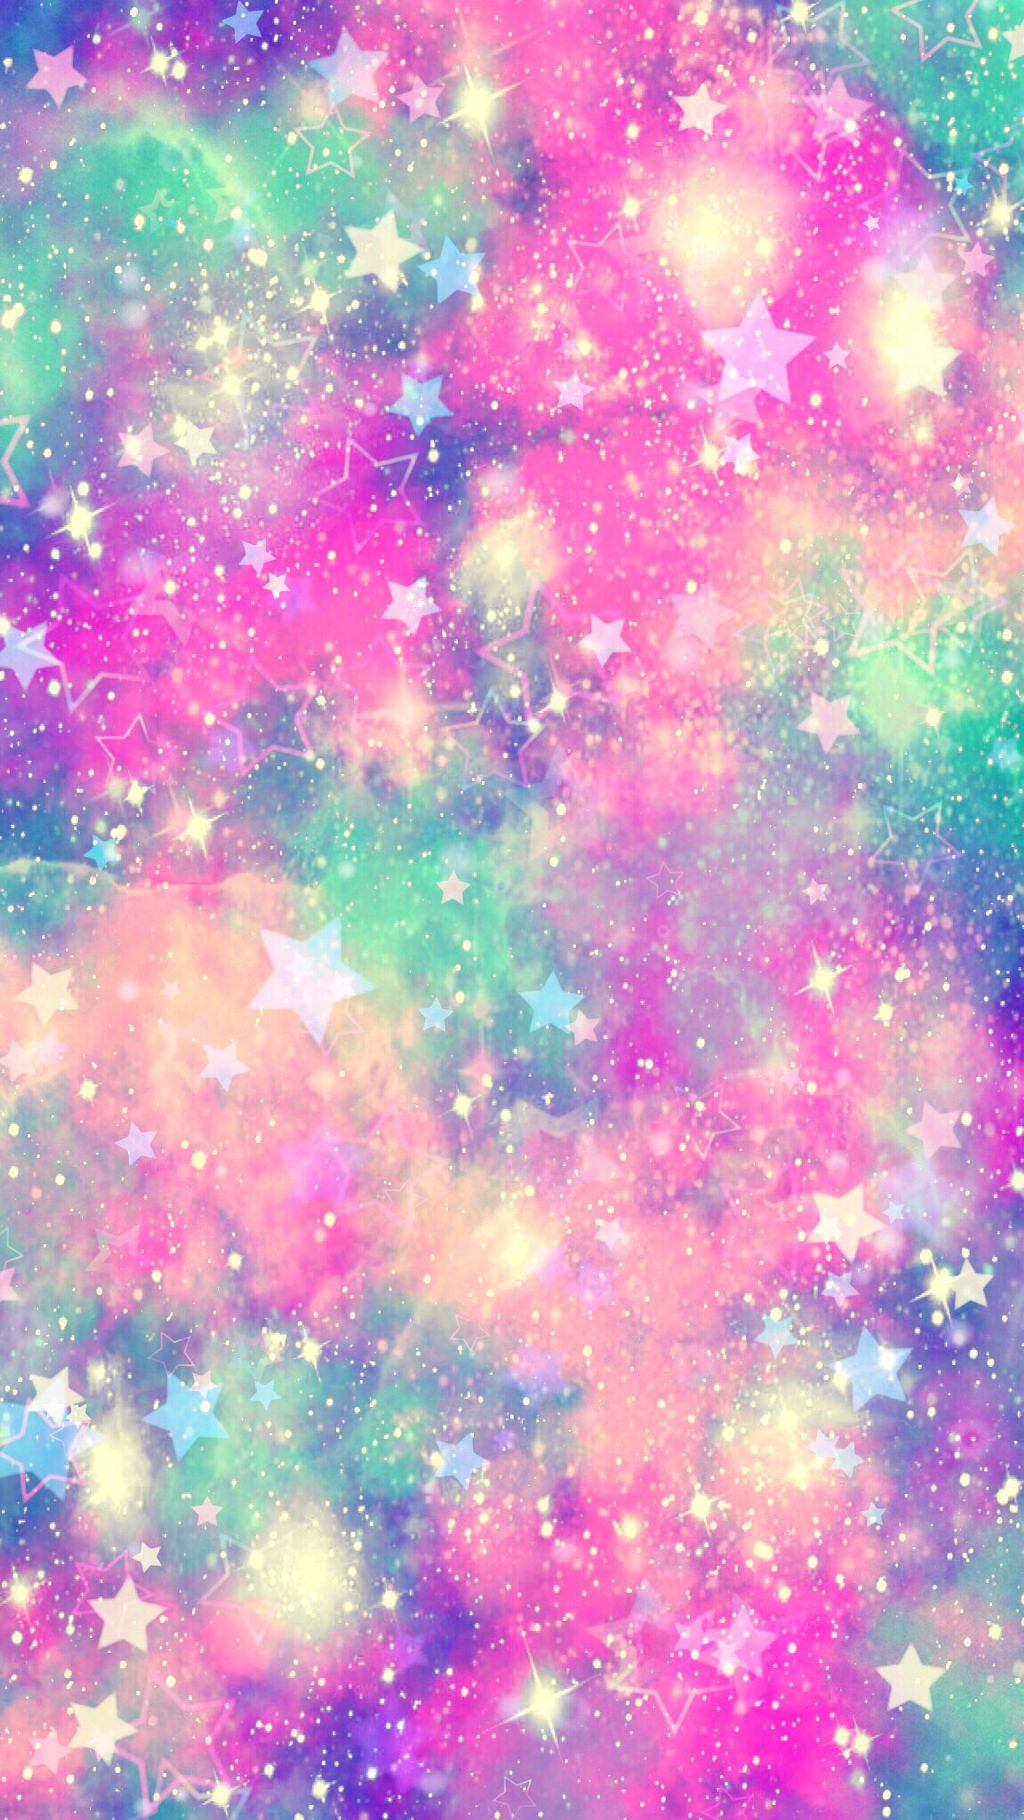 銀河キラキラ壁紙,星雲,緑,ピンク,紫の,パターン